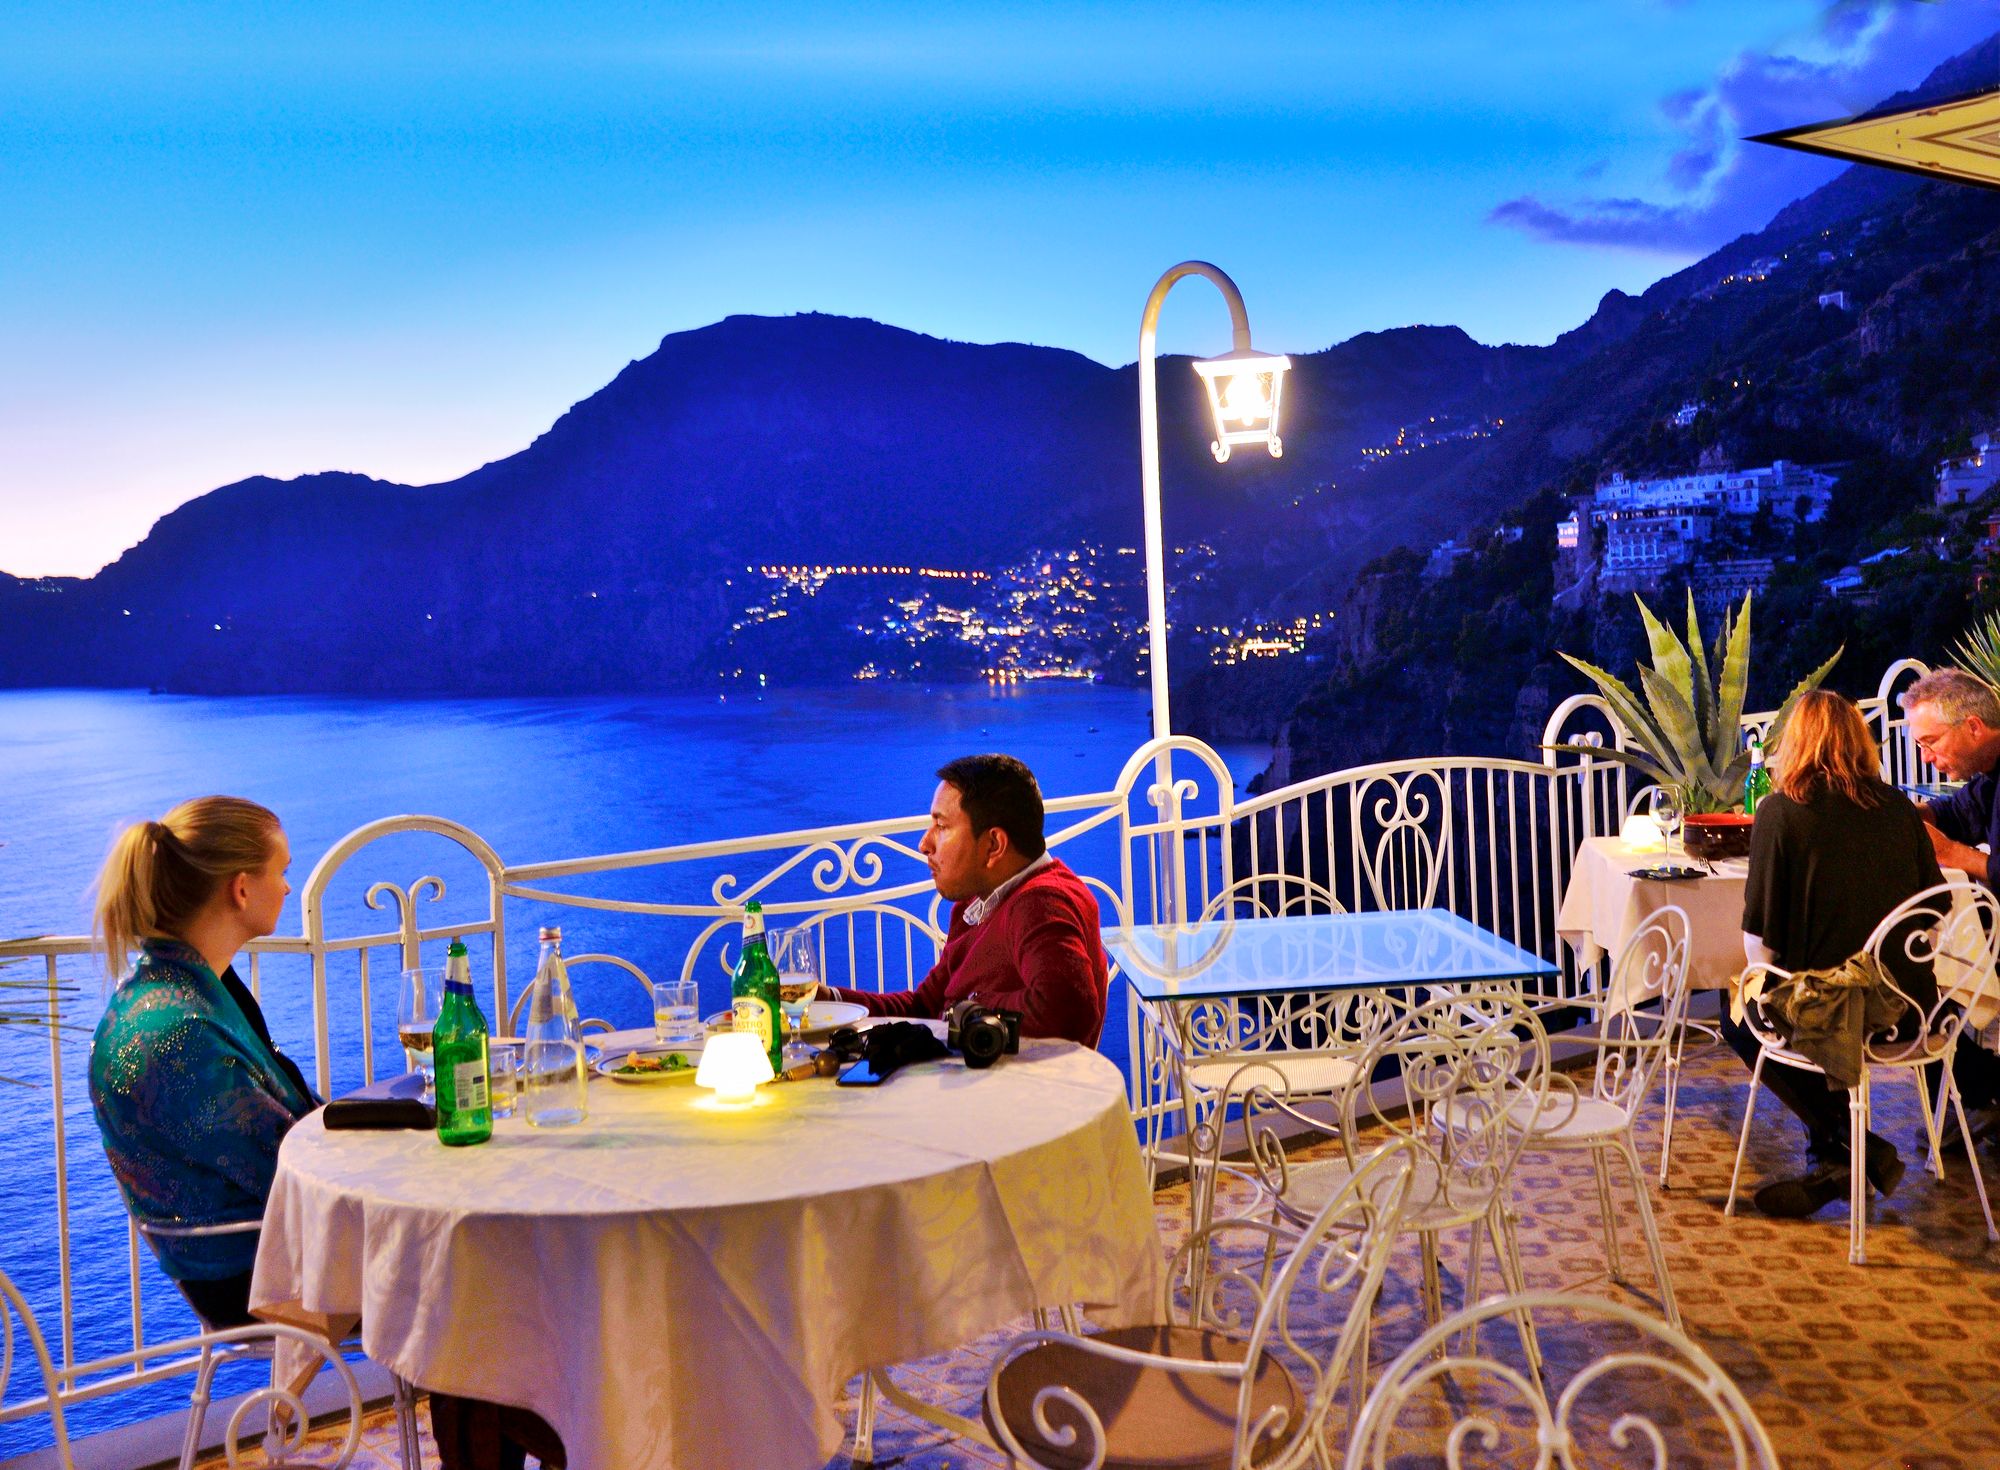 Ravintolan terassilla tarkenee istua iltaa vielä lokakuussa. Syksy on hyvä aika lomailla Amalfilla, kun vilkkain kesälomasesonki on ohi. © Pekka Numminen